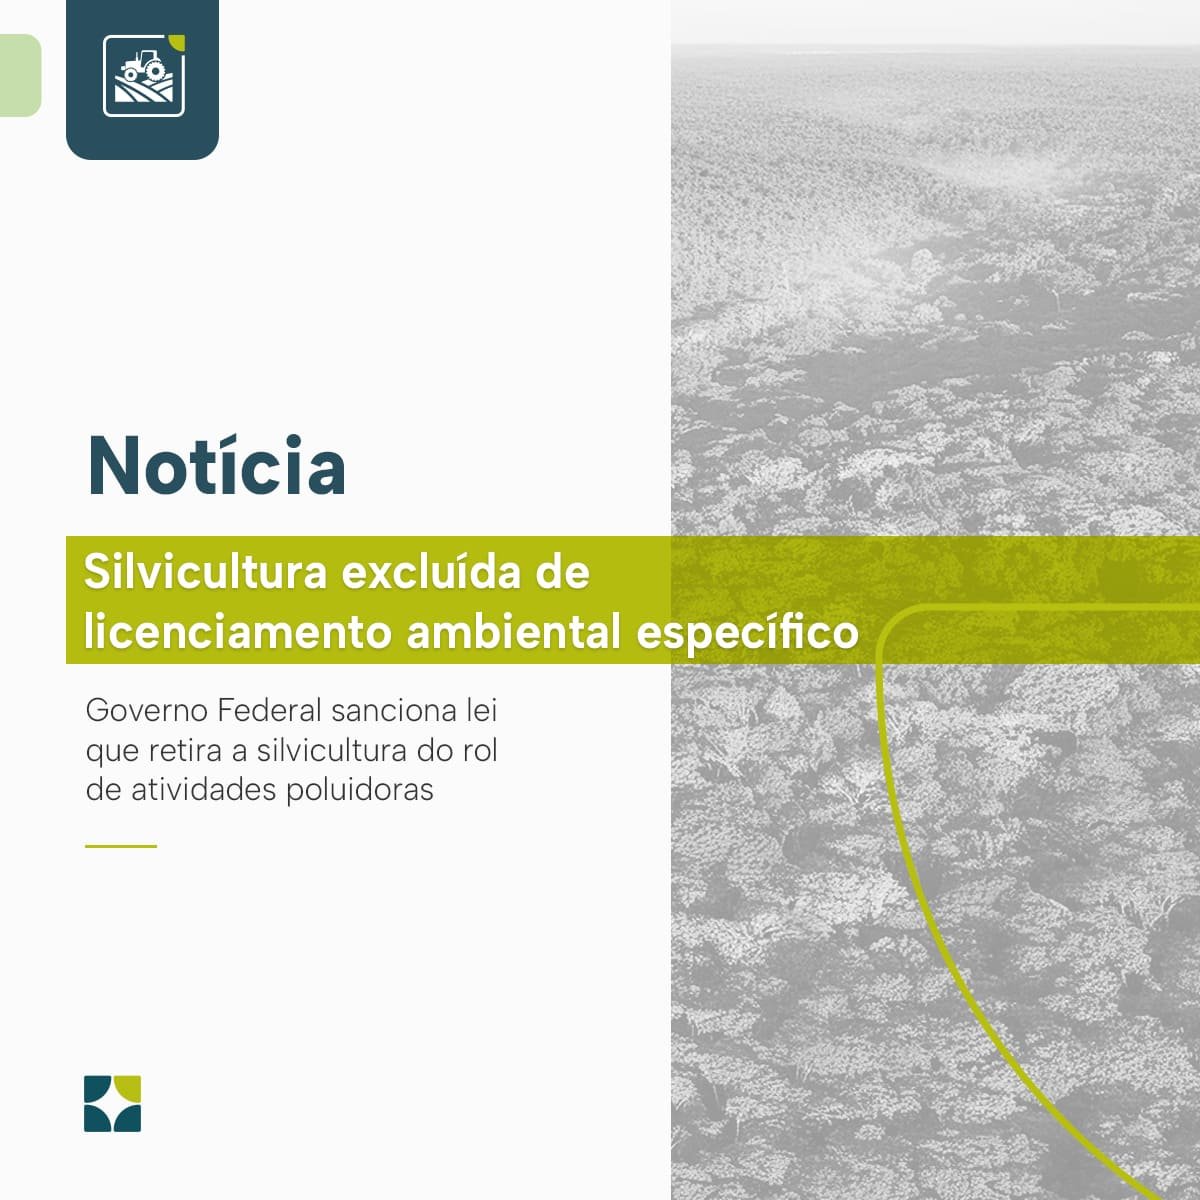 Silvicultura excluída de licenciamento ambiental específico